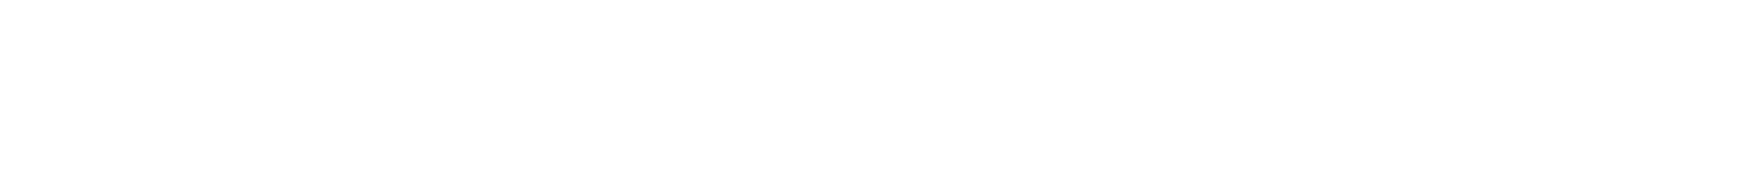 1ST RUNNER UP MISS UNIVERSE ARUBA 2023 MOST INSPIRATIONAL MUA 2023 